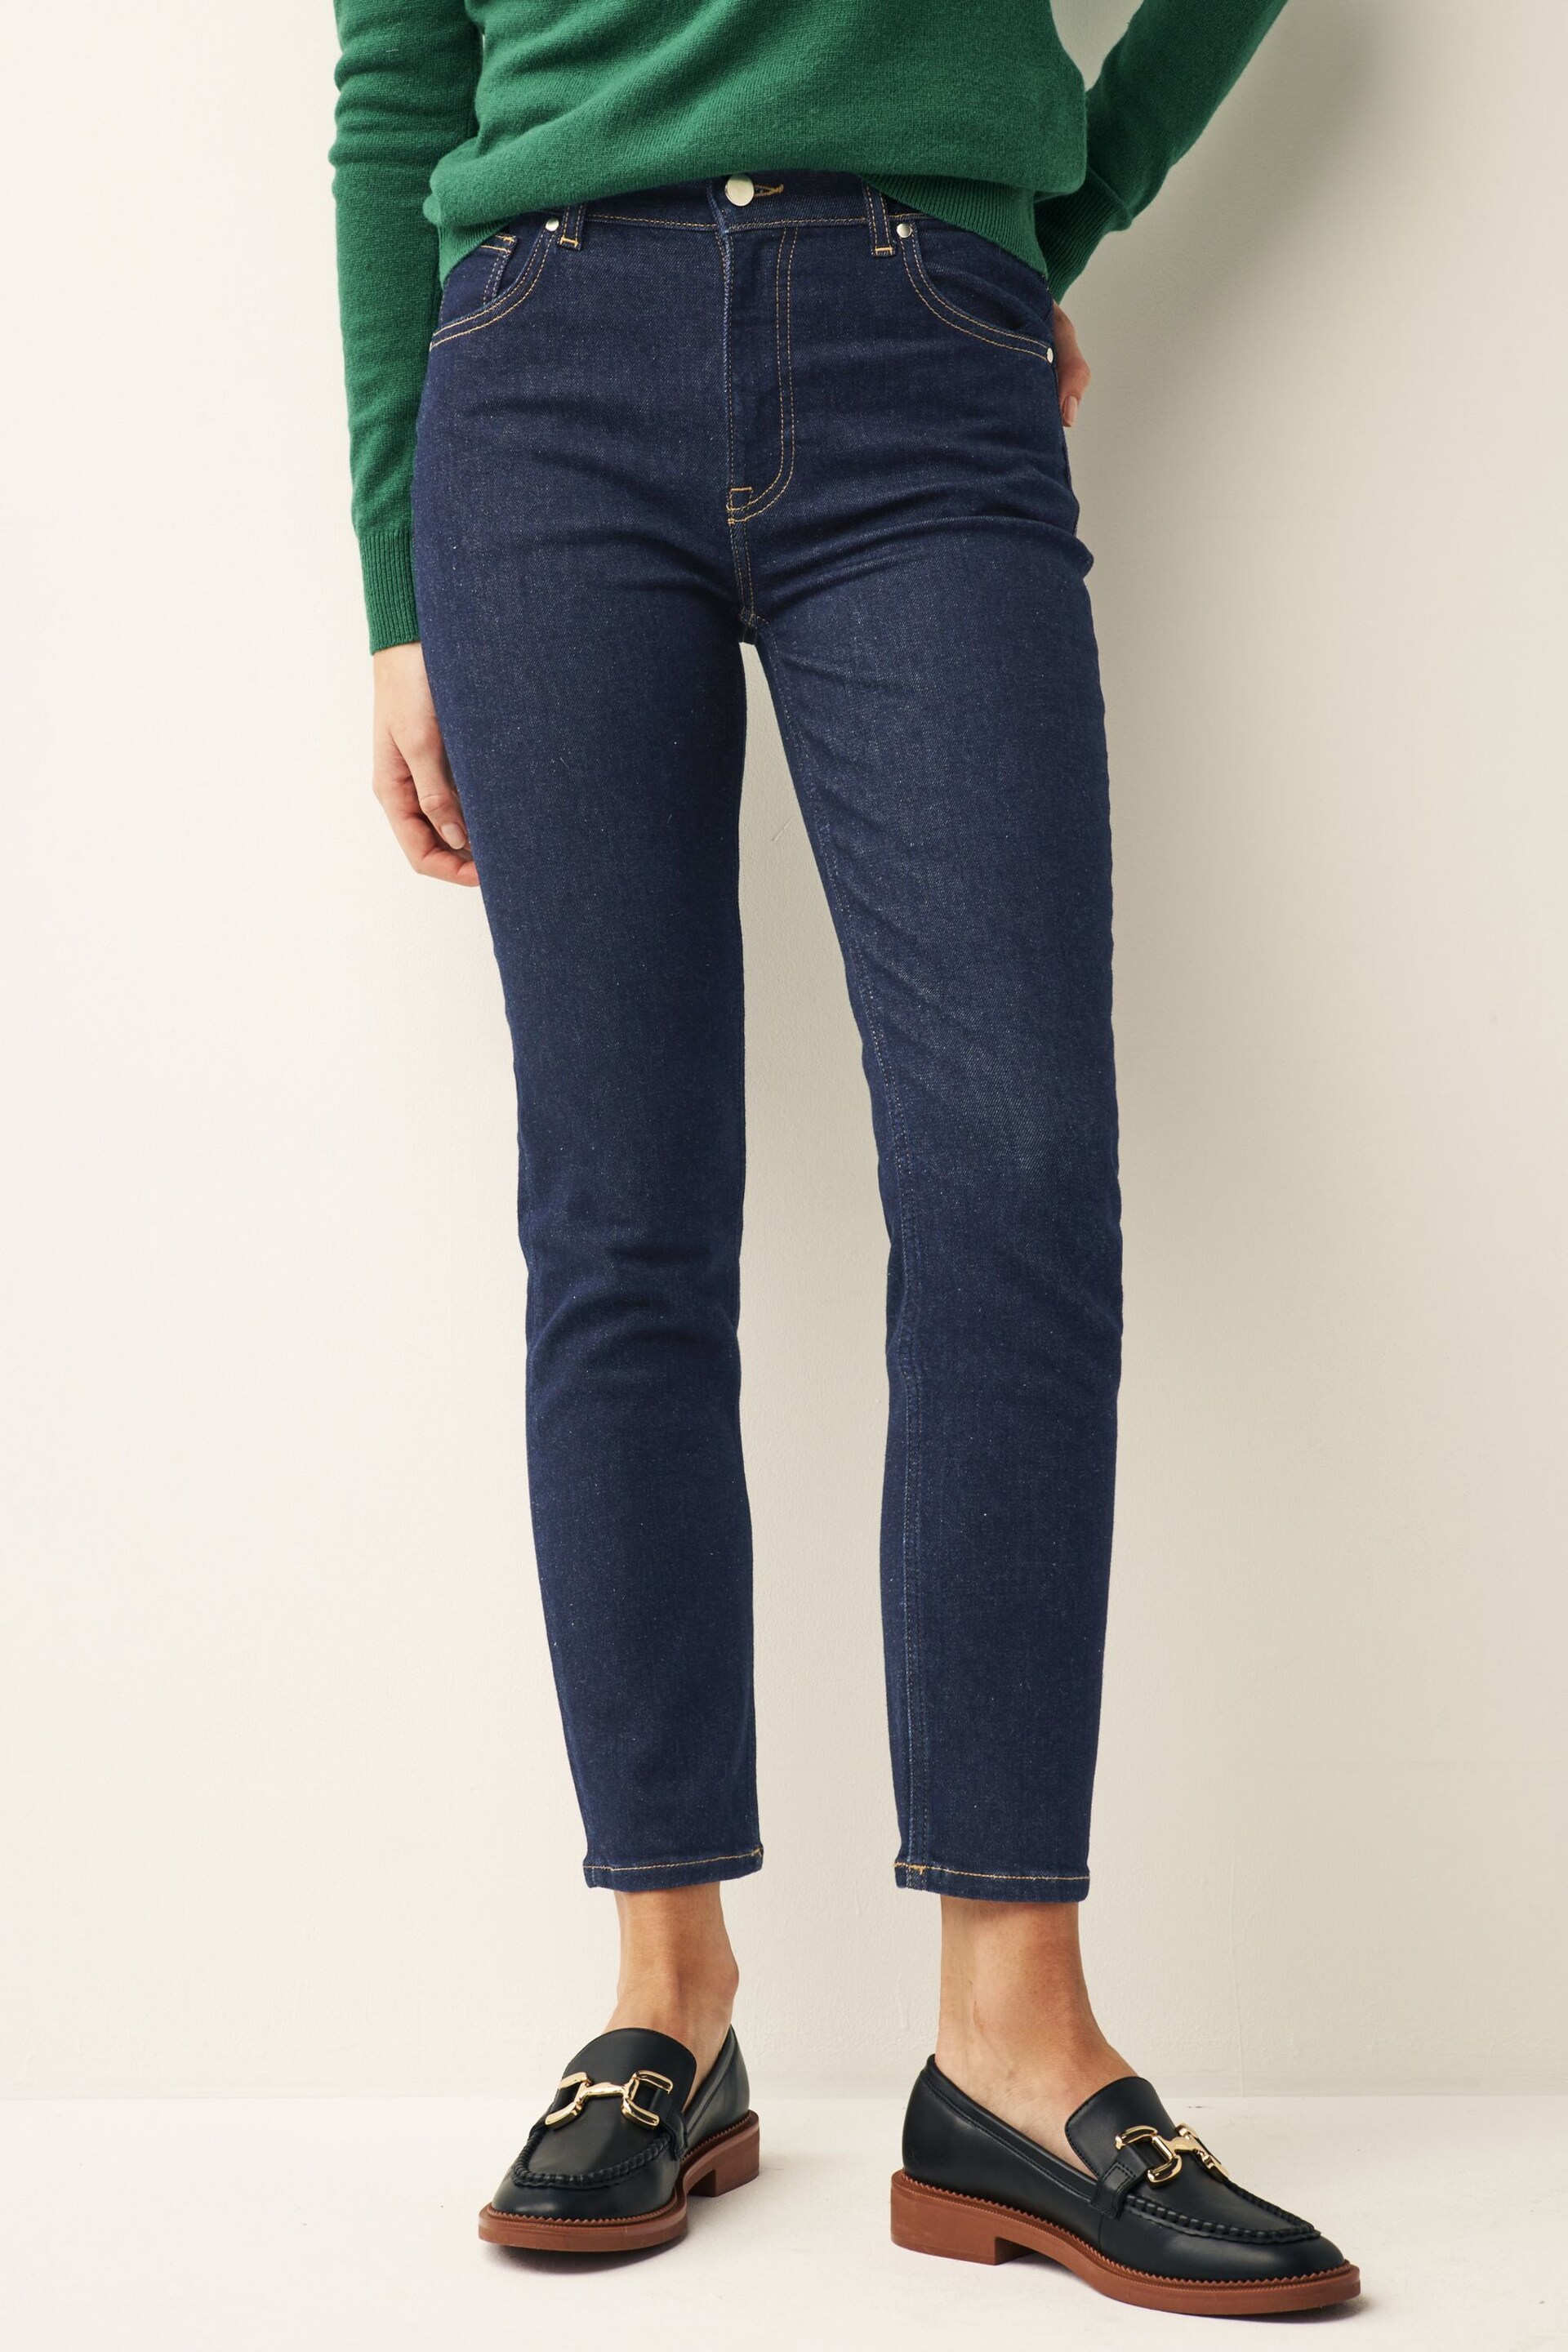 GANT Blue Ankle Length Slim Fit Jeans - Image 1 of 5